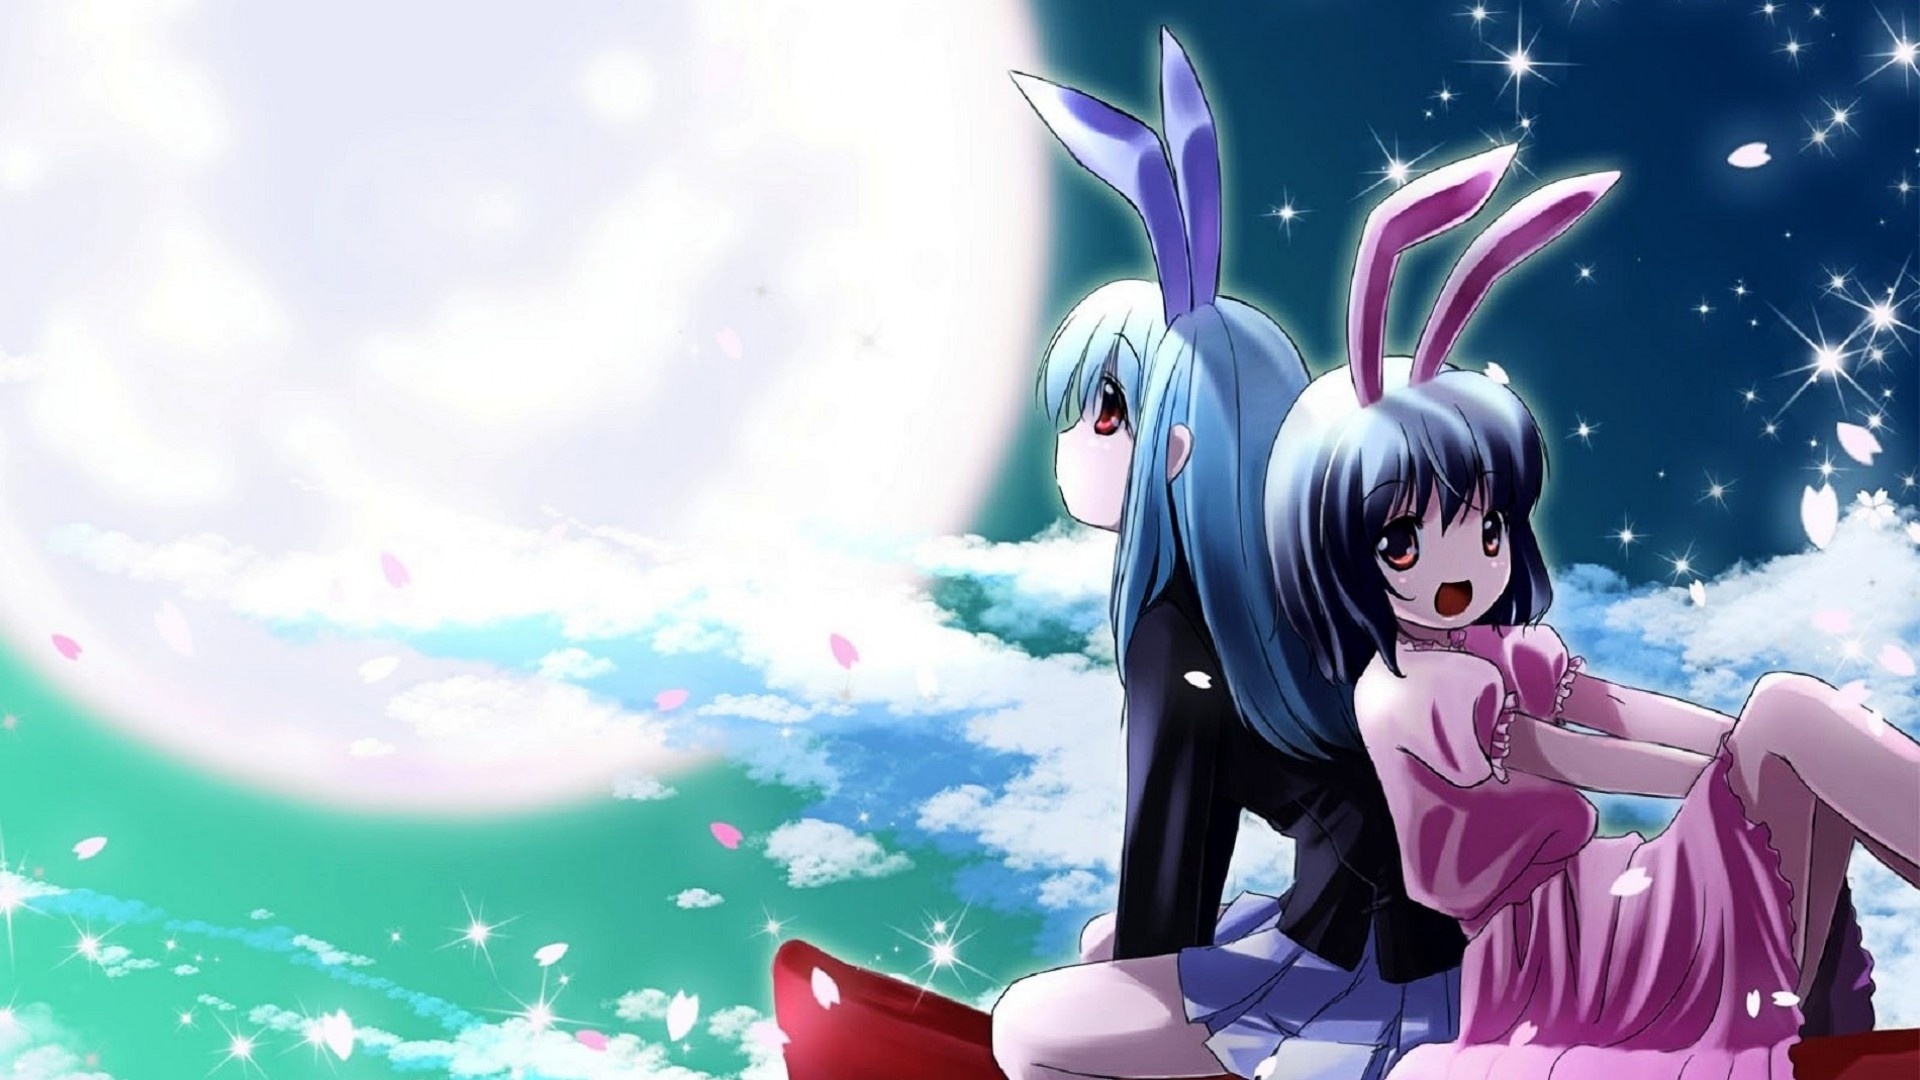 Anime Bunnygirl - Anime Girl Wallpaper Animated - HD Wallpaper 